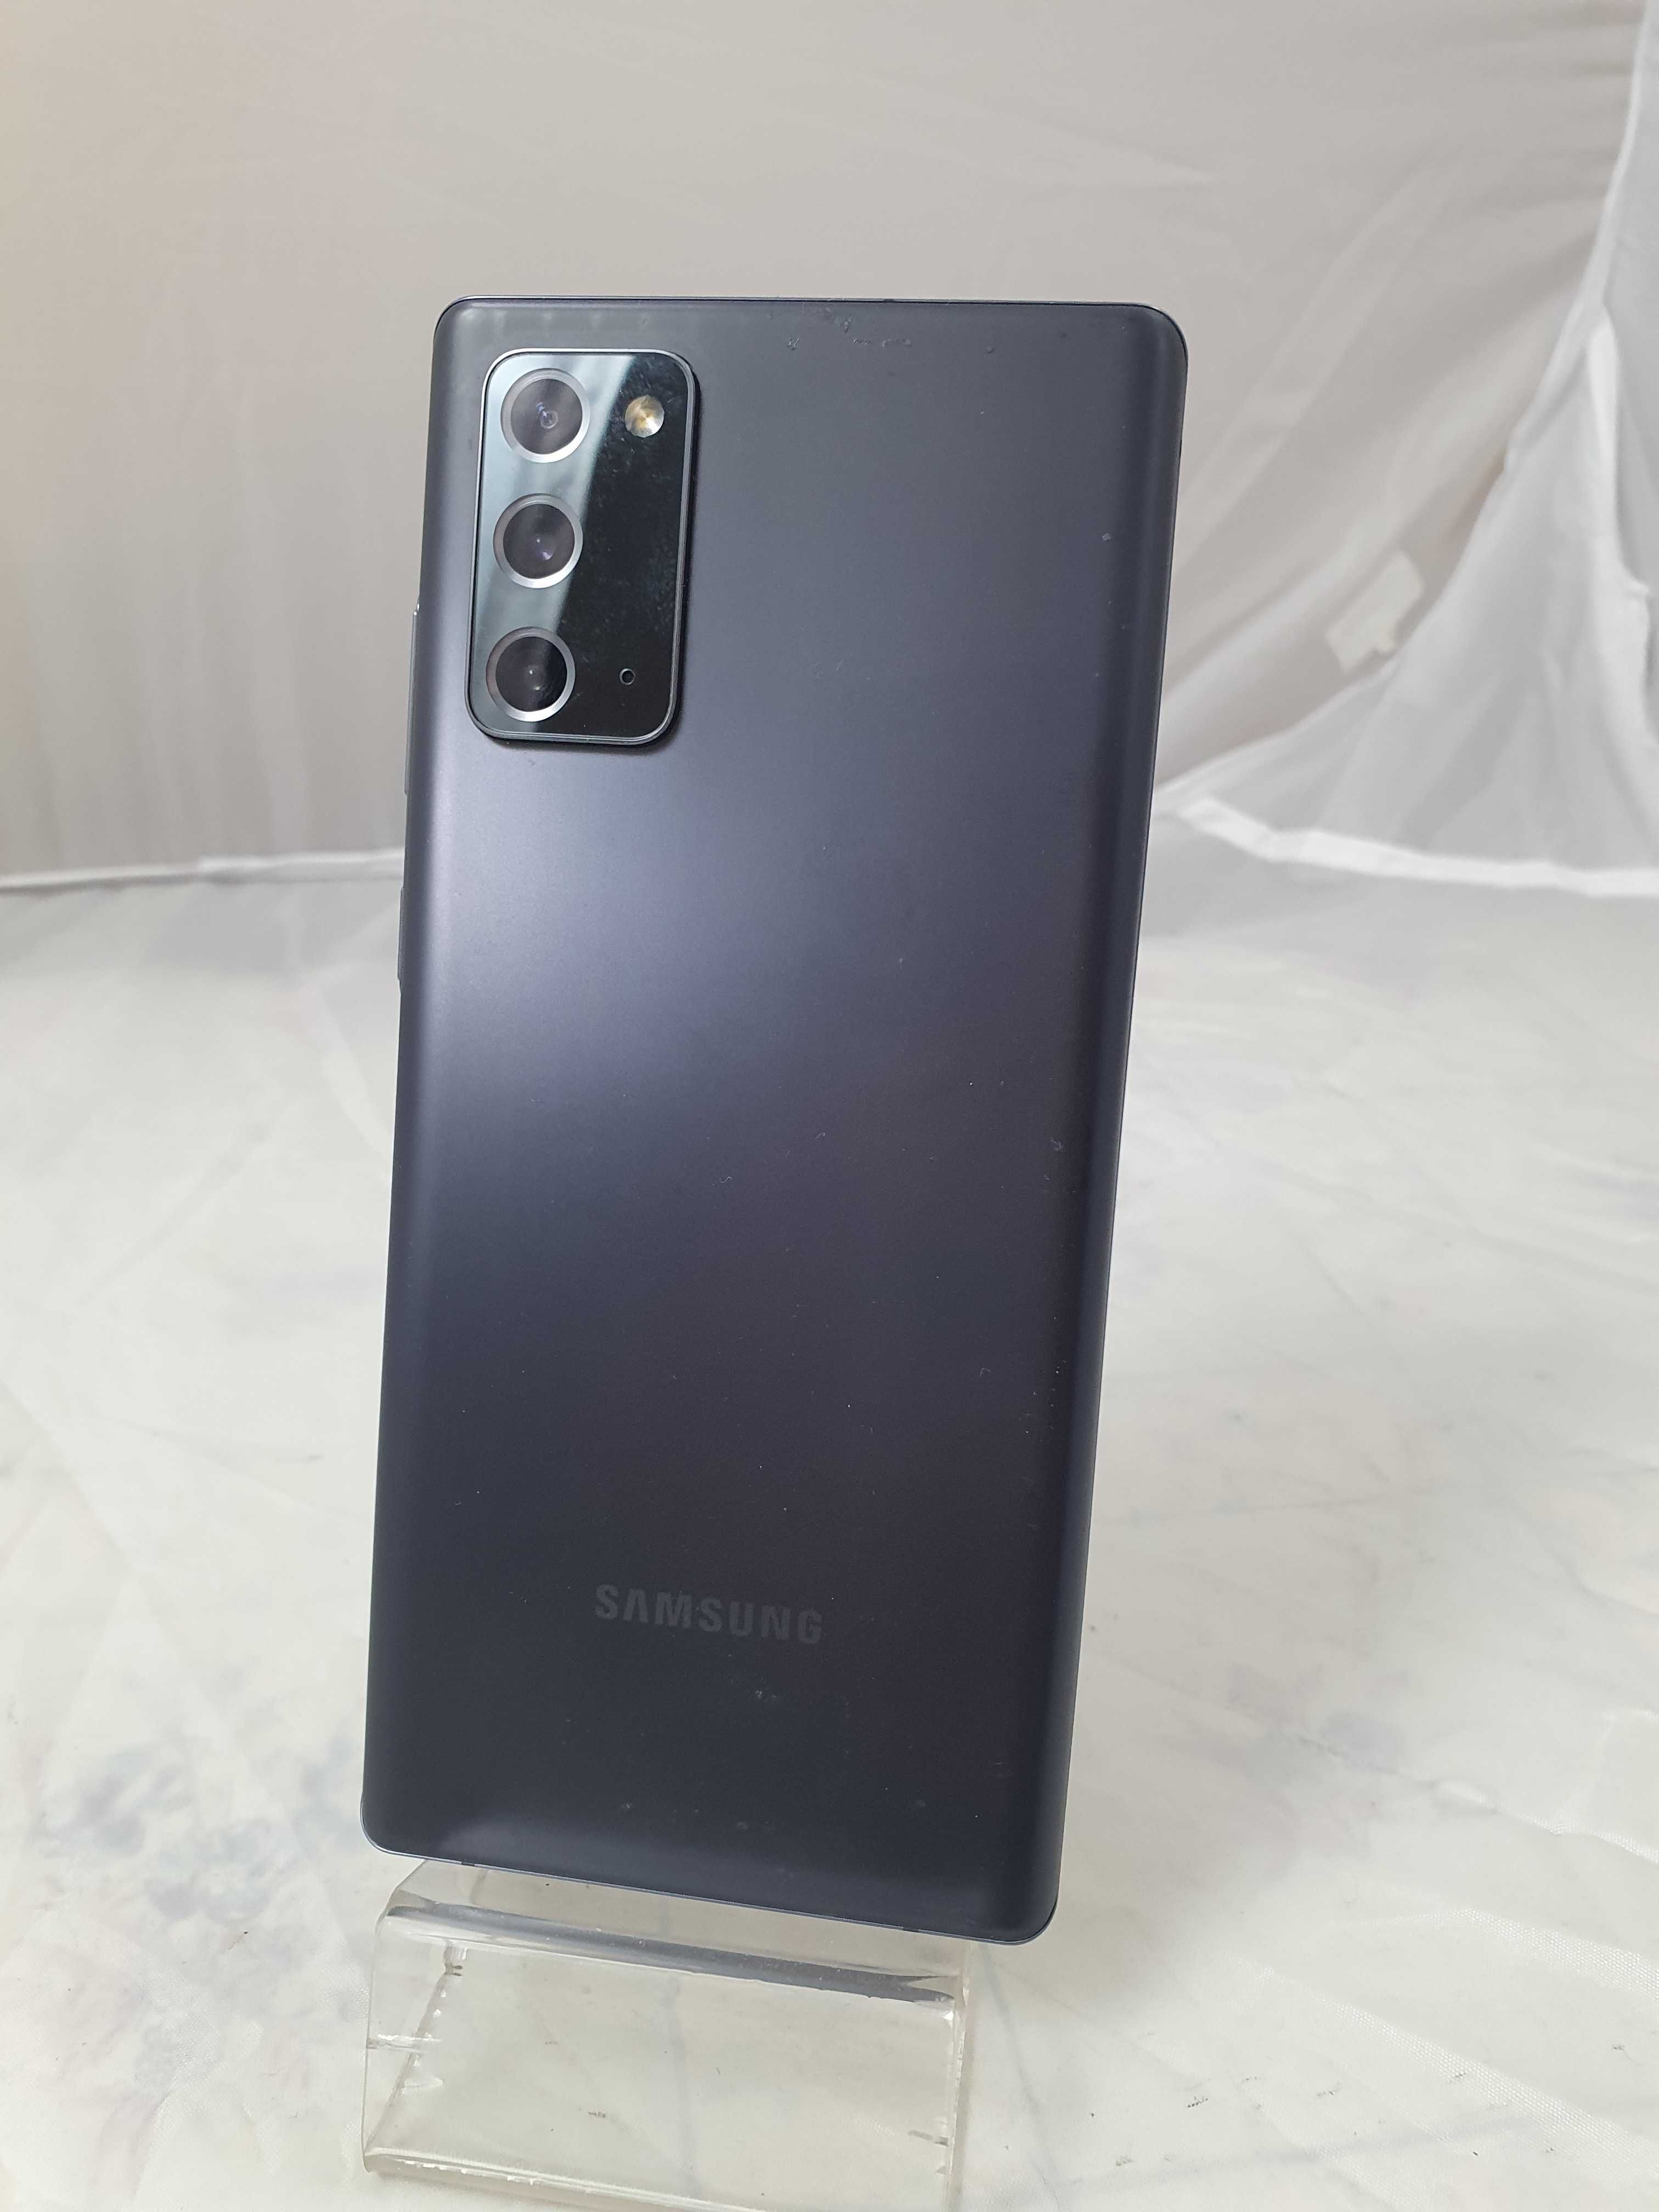 Samsung Galaxy Note 20 5G SM-N981U1 8/128Gb eSim